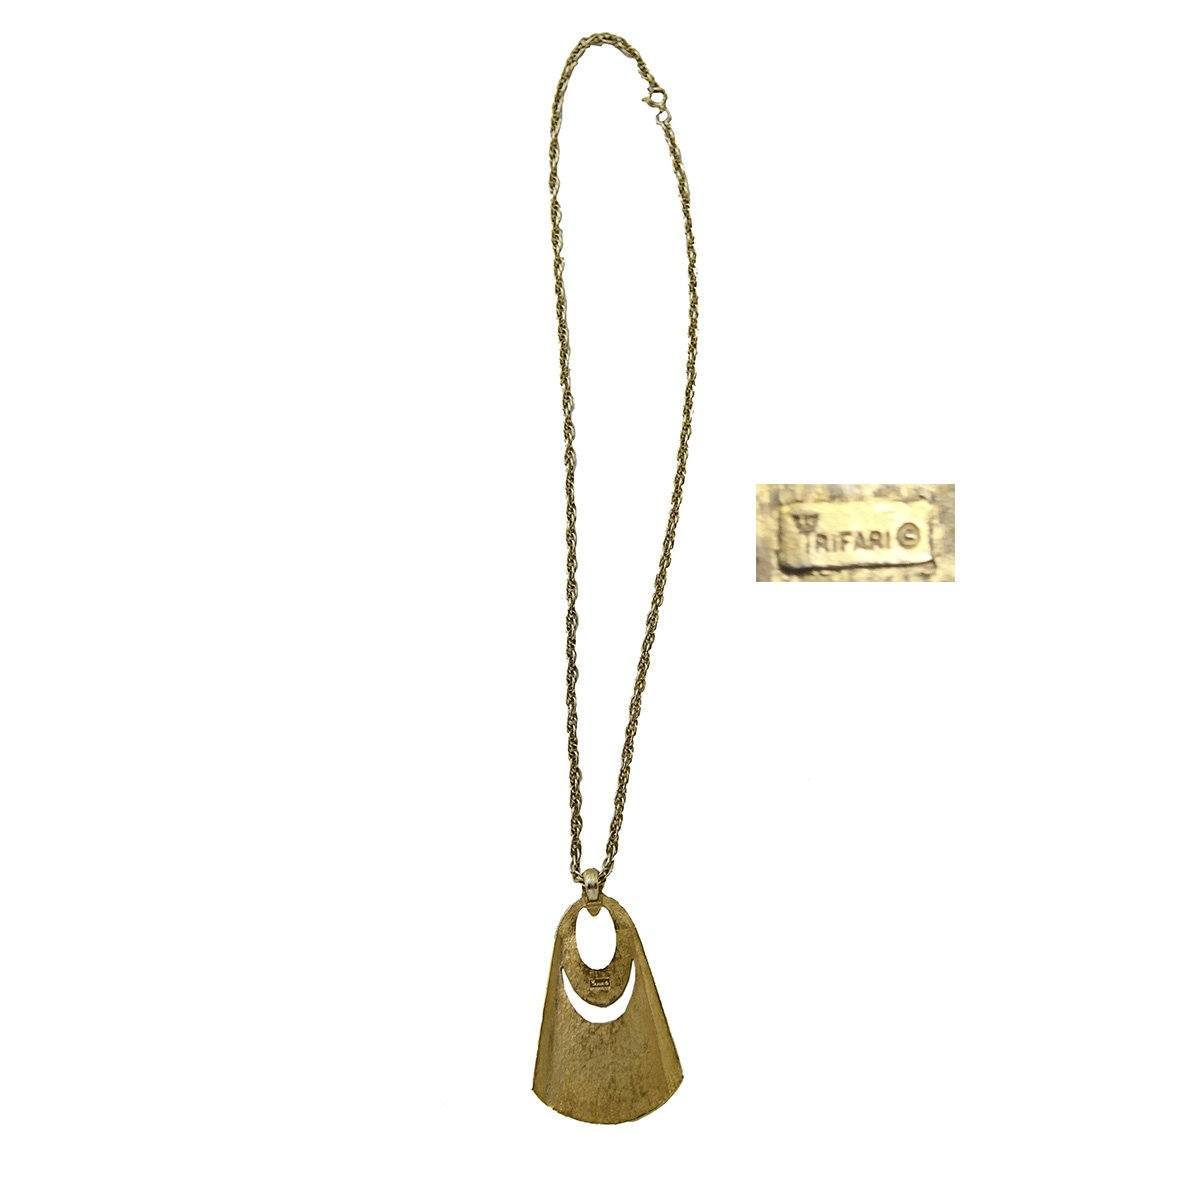 1960s Crown Trifari Necklace,  Modernist Pendant Necklace